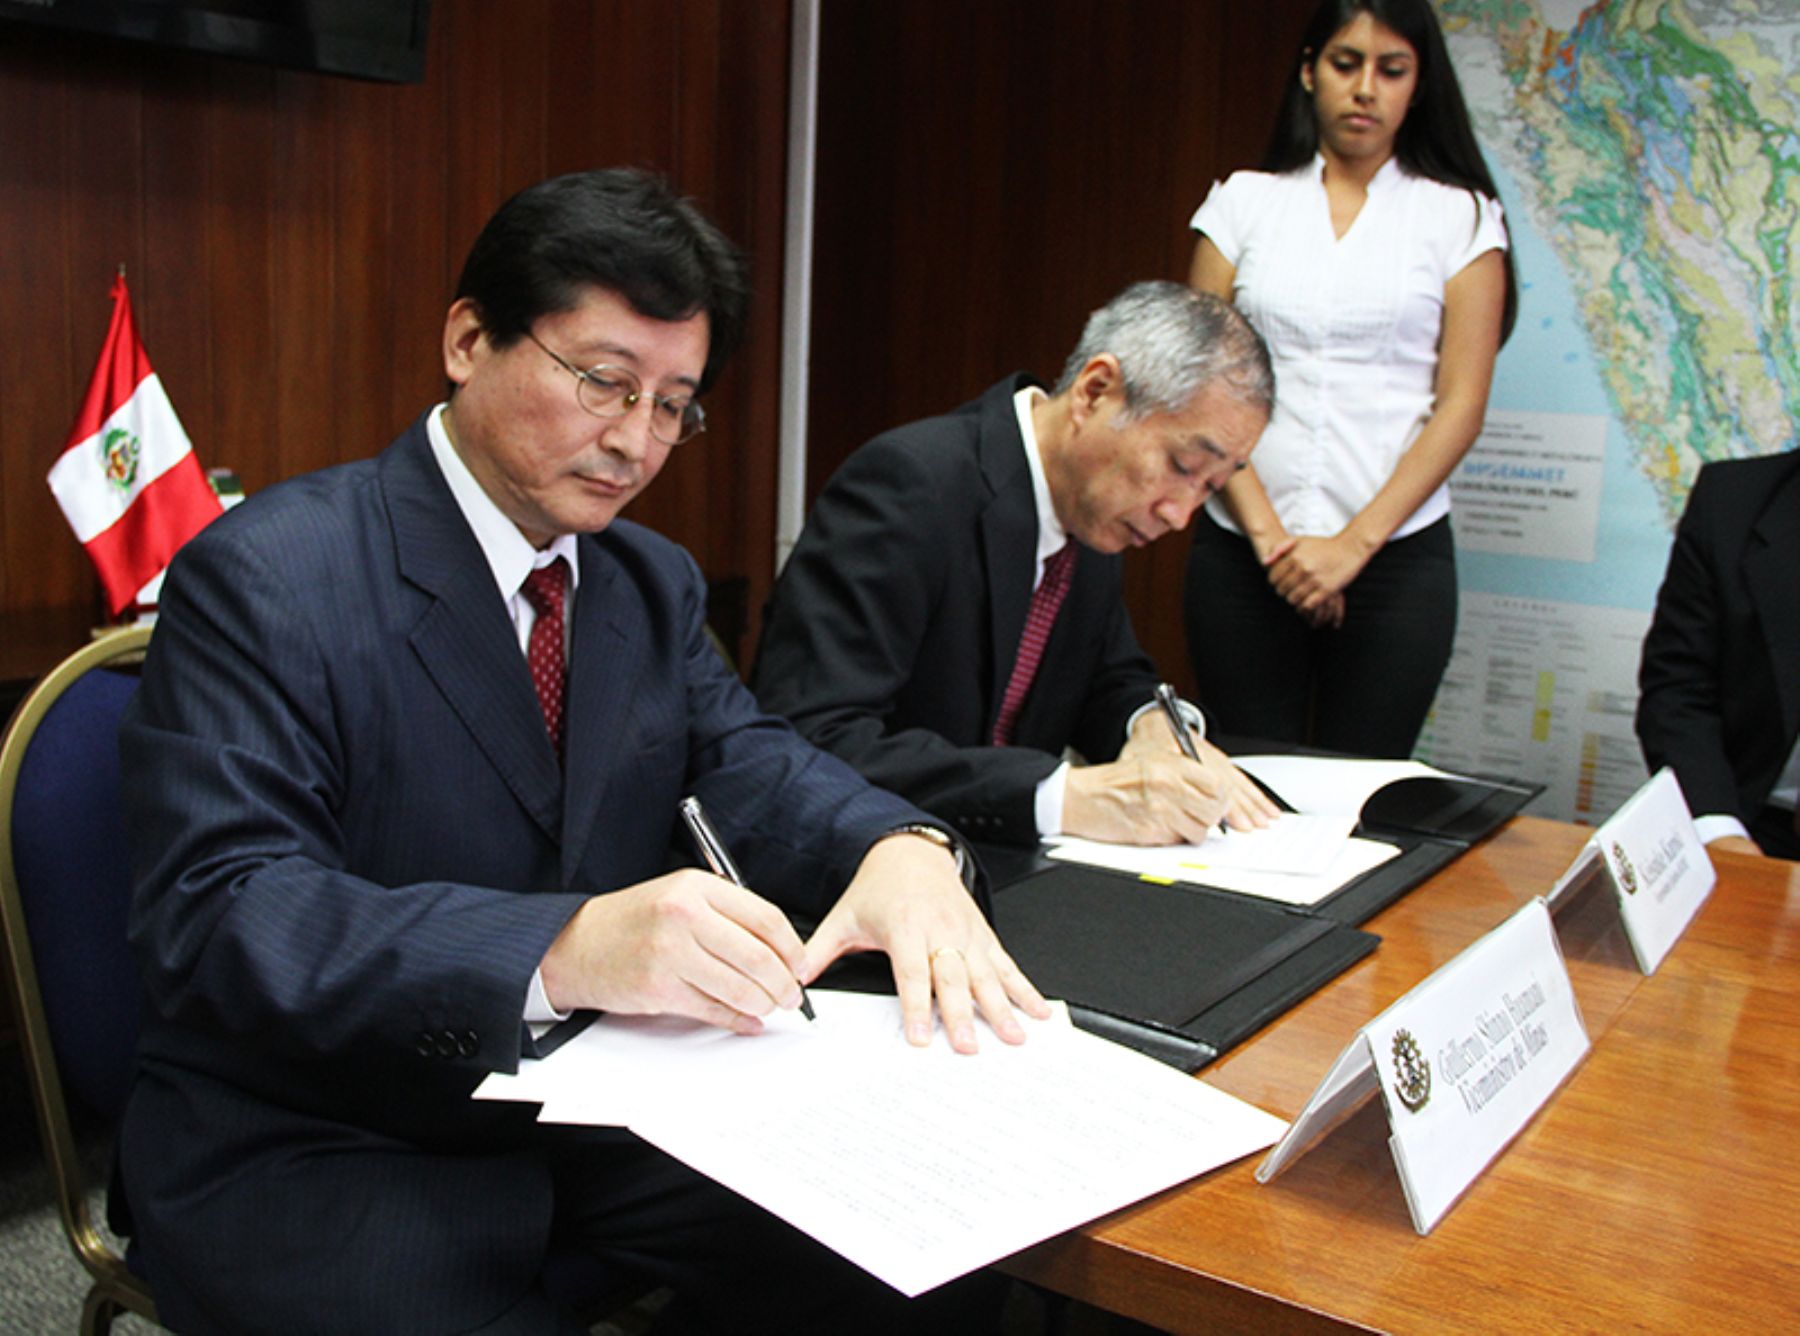 El viceministro de Minas, Guillermo Shinno, y el vicepresidente ejecutivo de Jogmec, Keisuke Kuroki, firman convenio de cooperación bilateral.